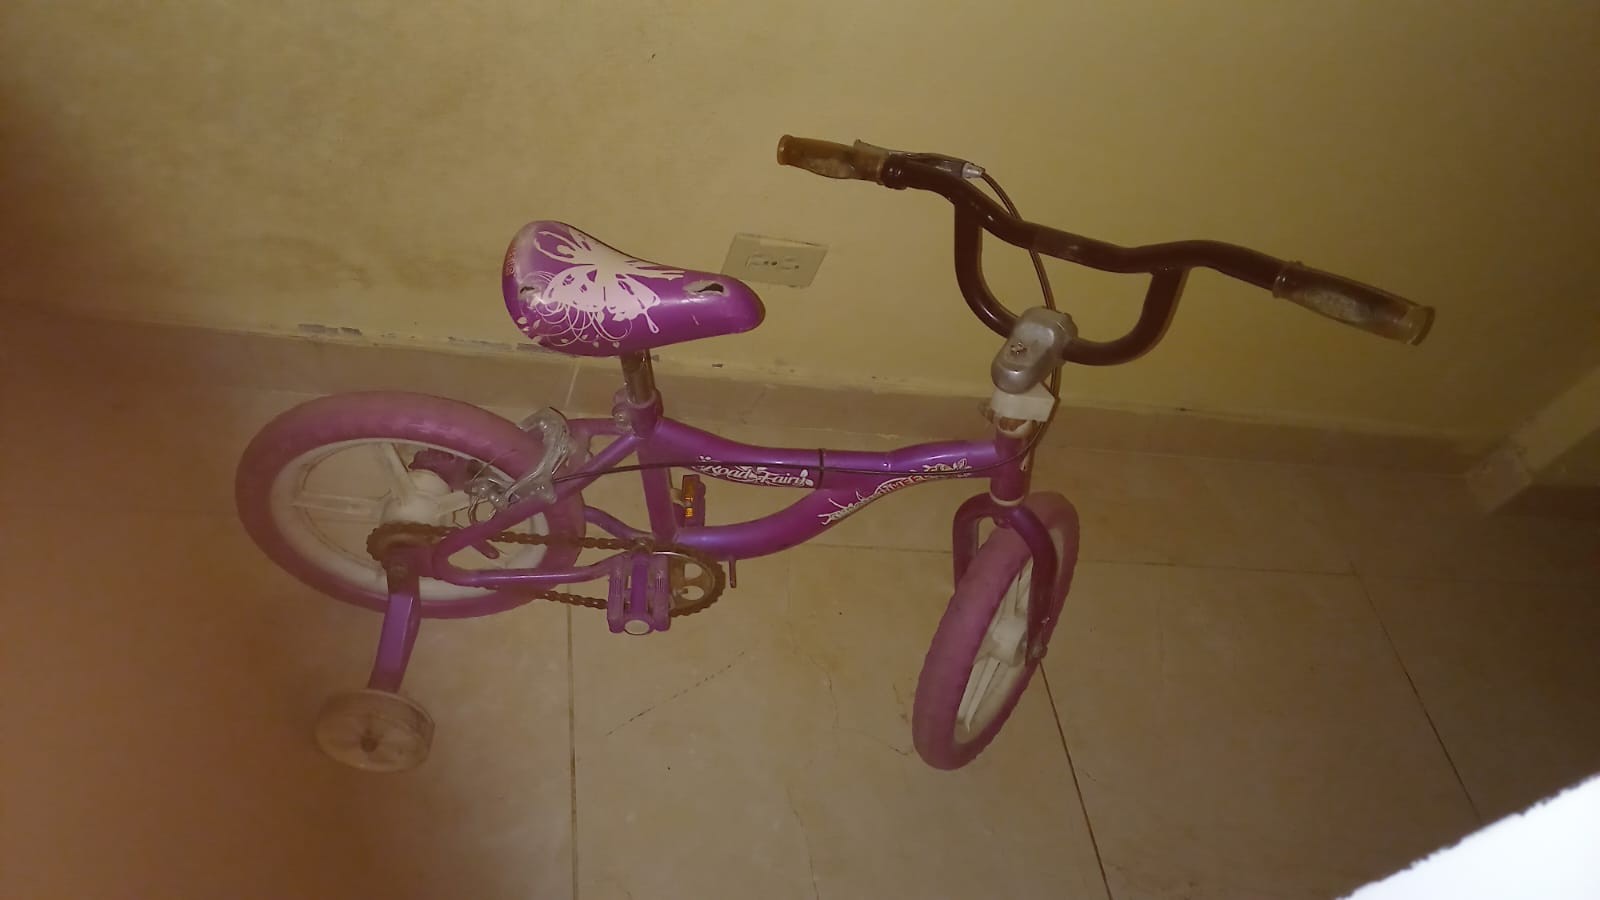 bicicletas y accesorios - Se vende bicicleta aro 12 de niña 